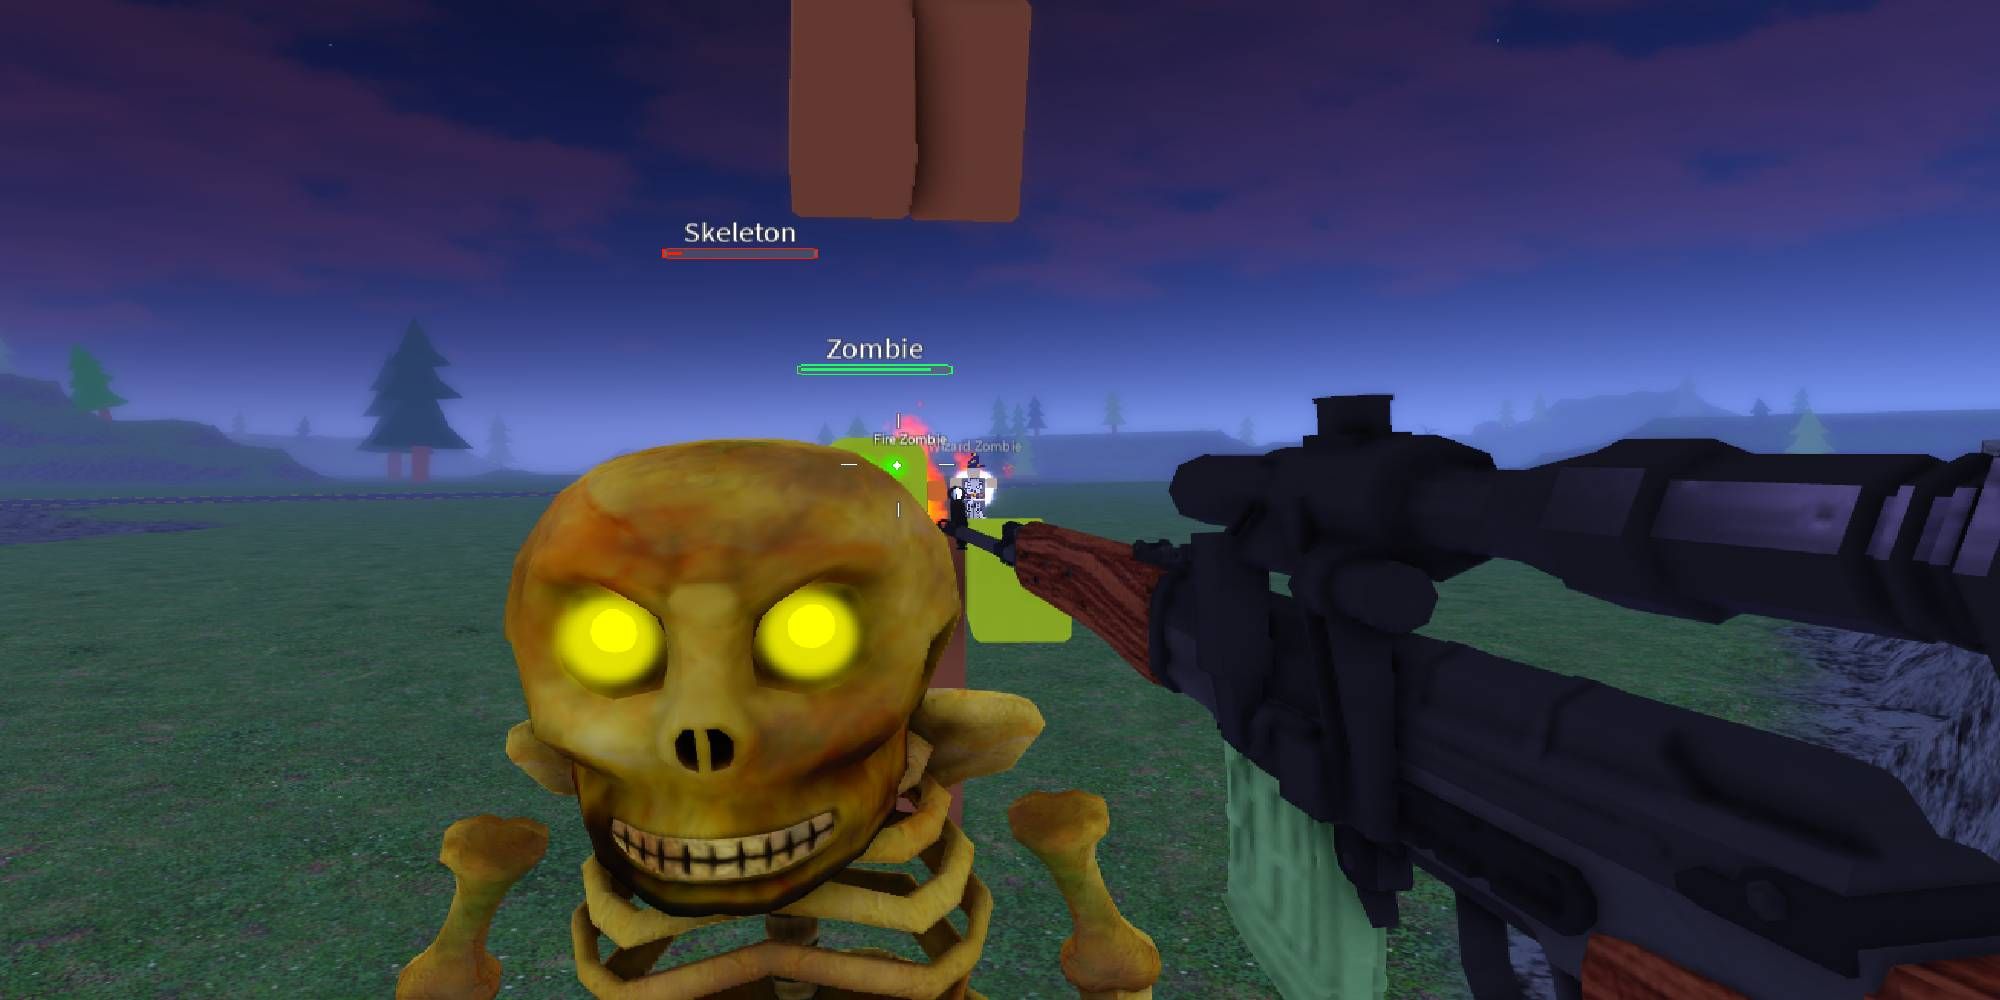 Skeleton Zombie Battle Tycoon